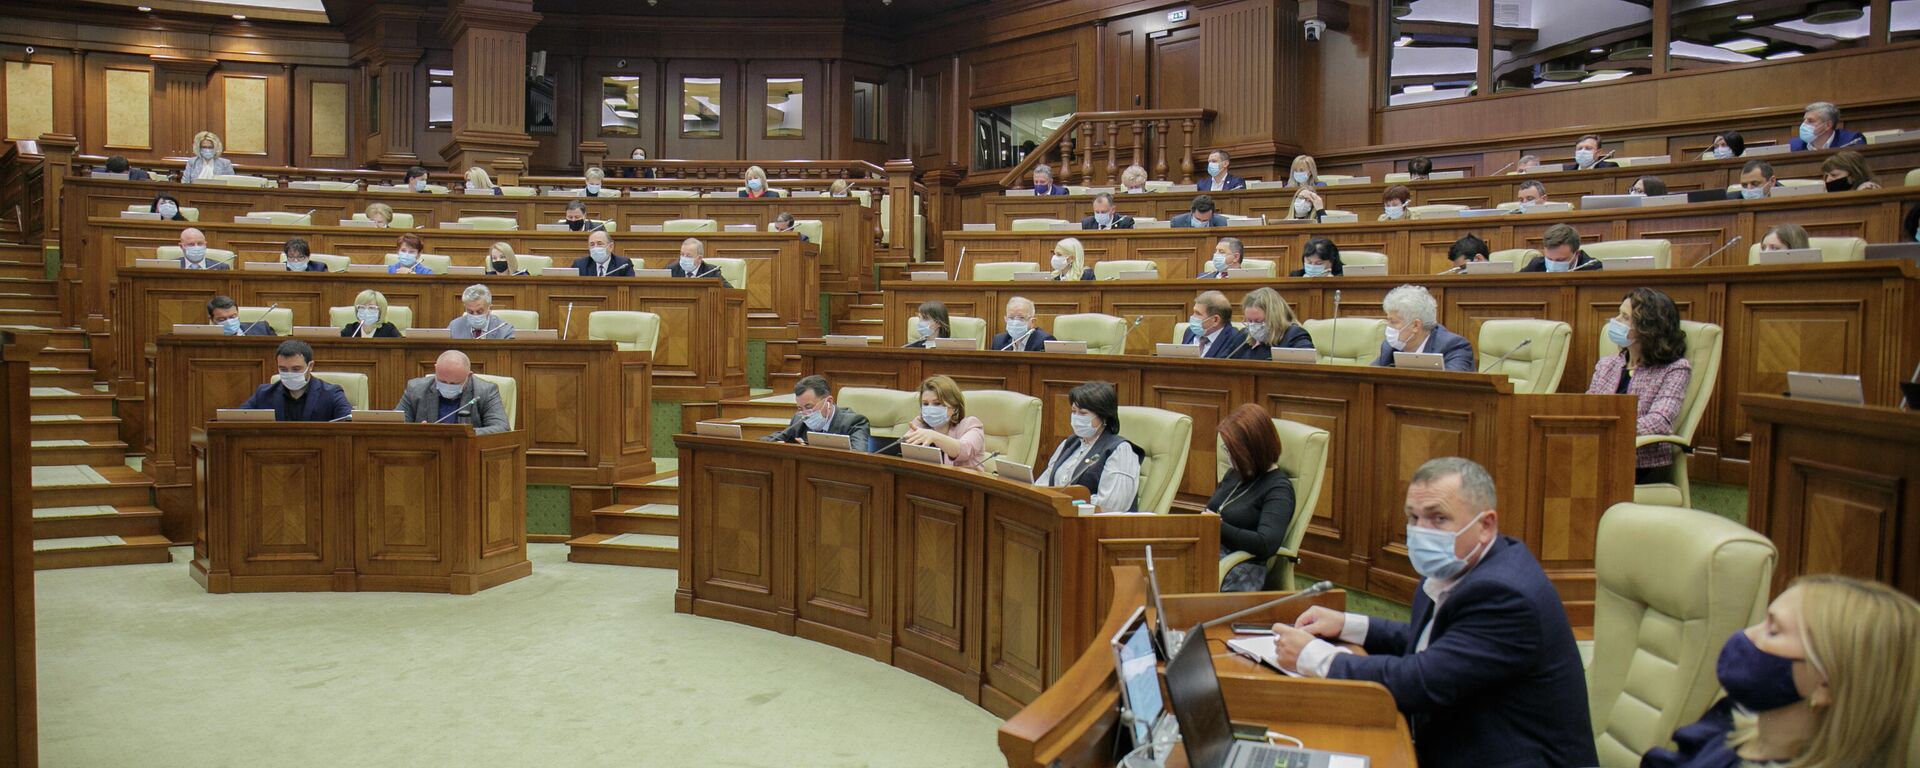 Заседание парламента Молдовы 21 октября 2021 - Sputnik Молдова, 1920, 22.10.2021